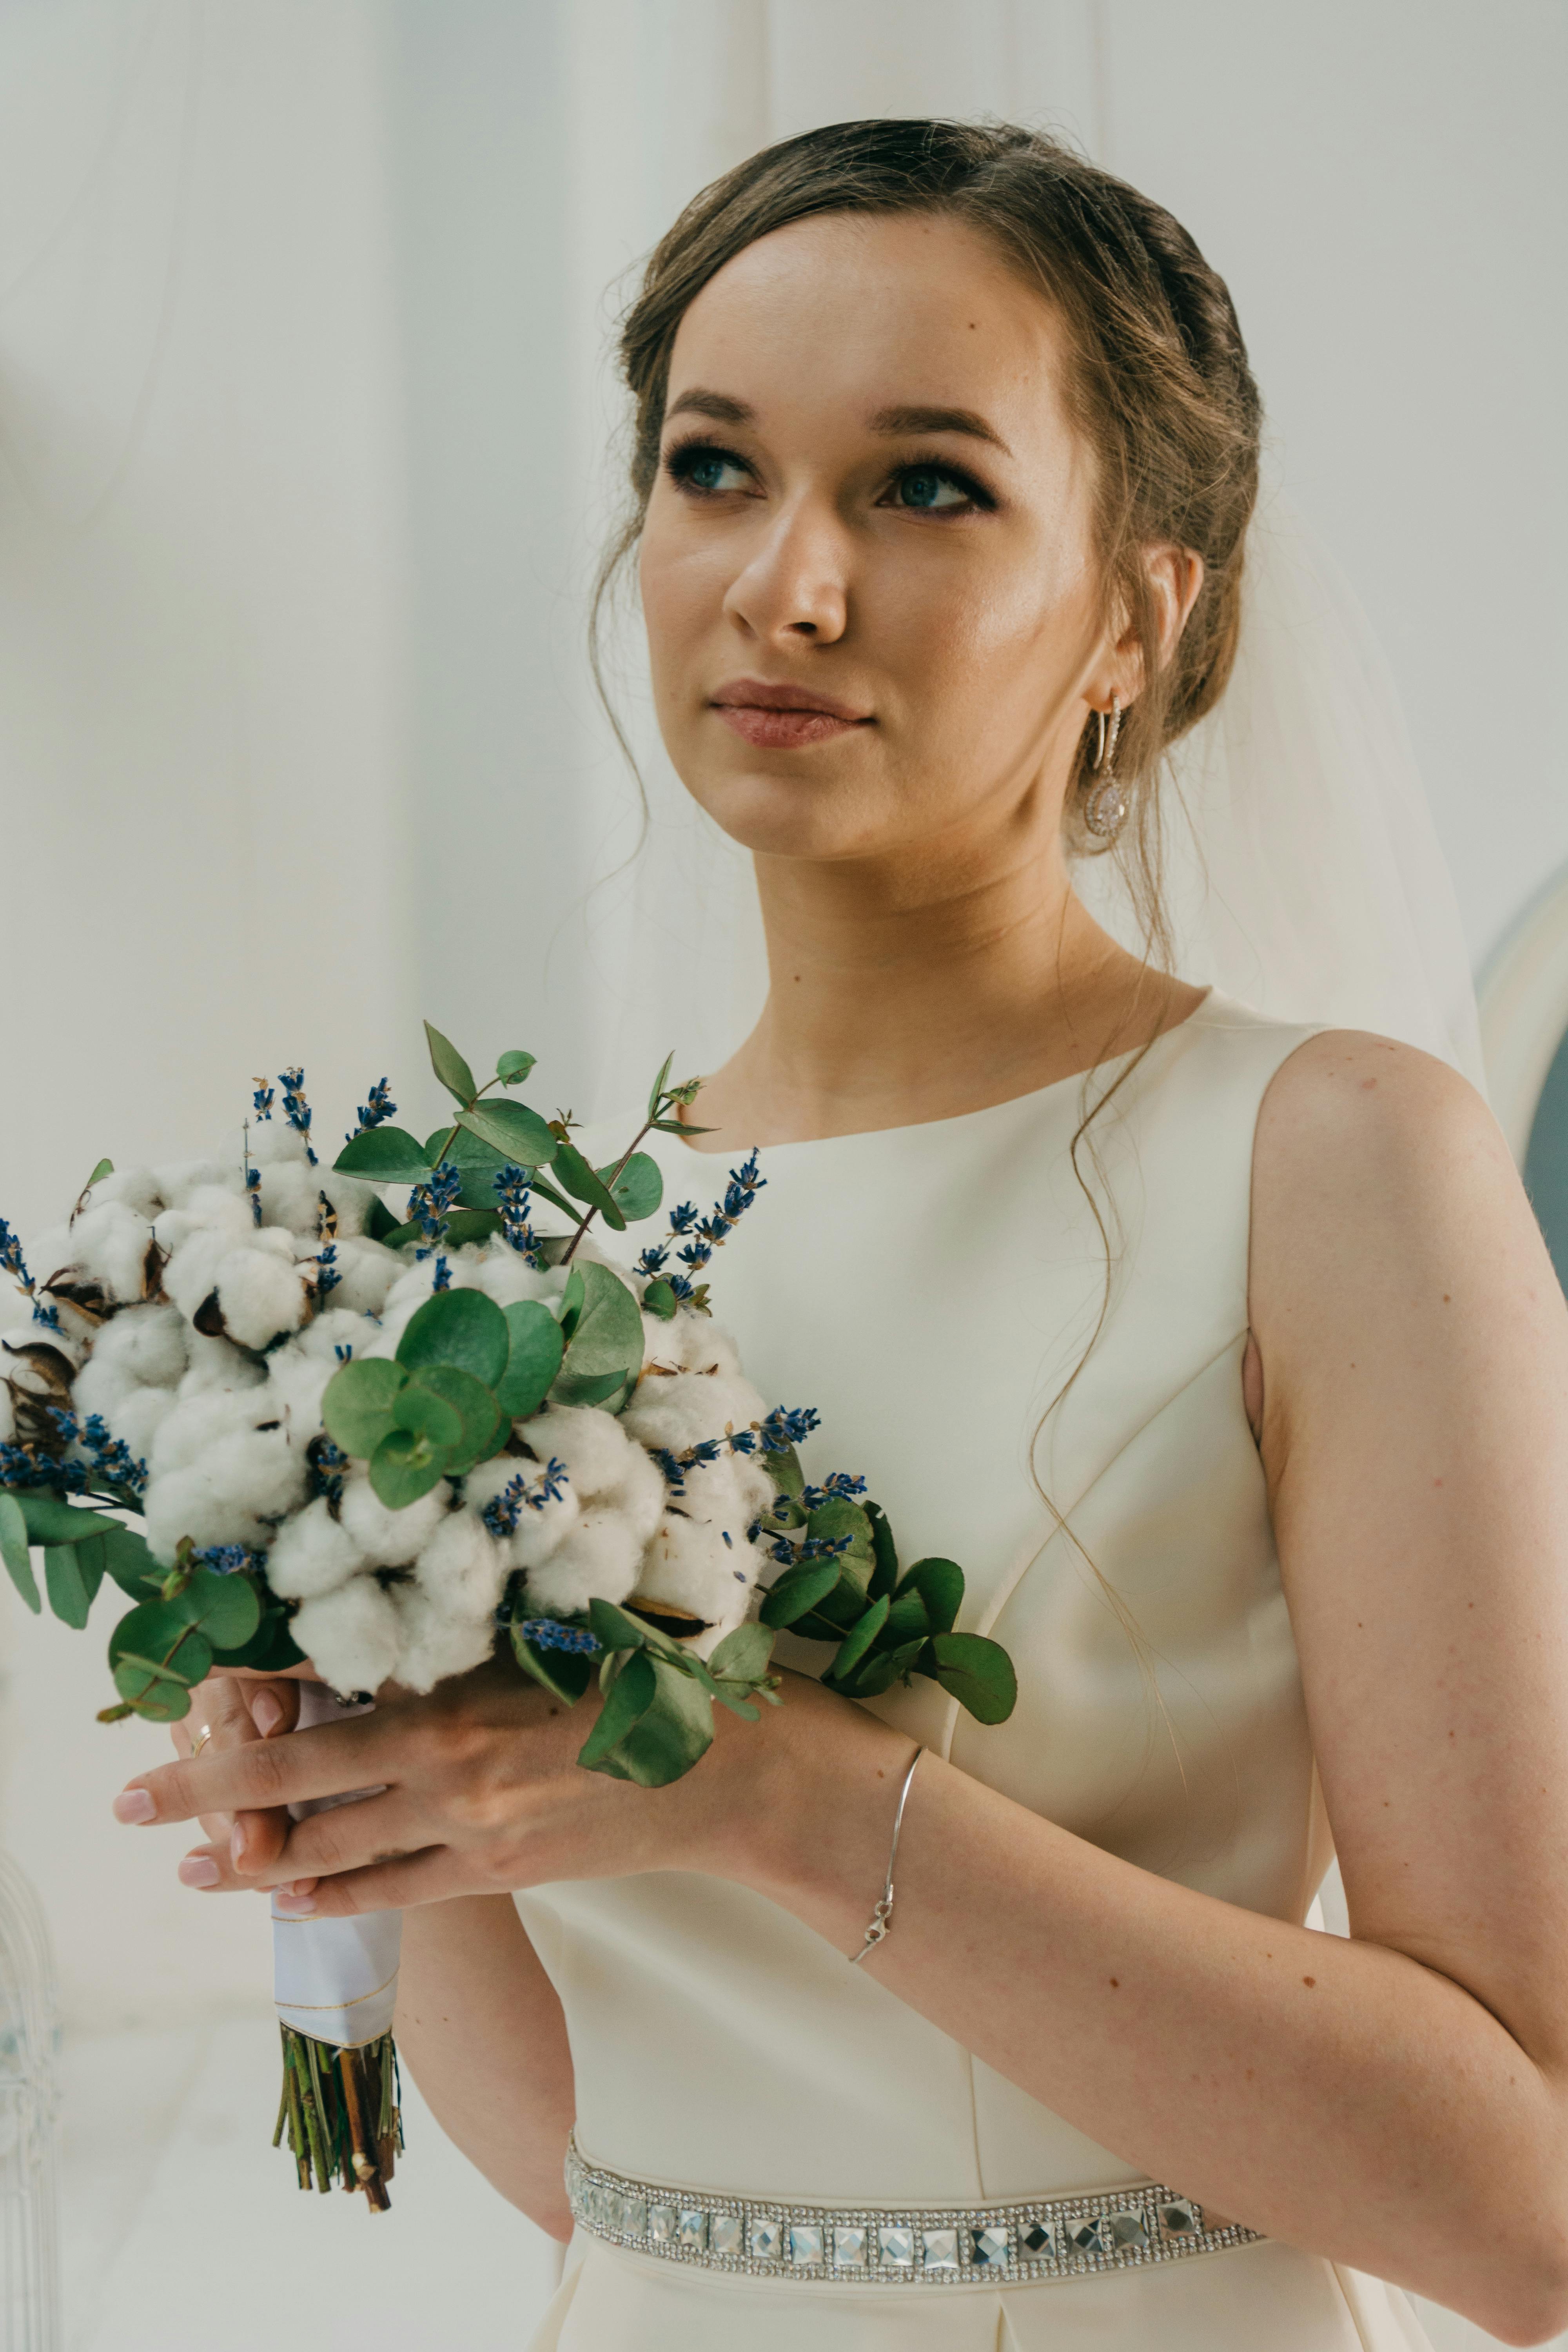 A worried bride | Source: Pexels